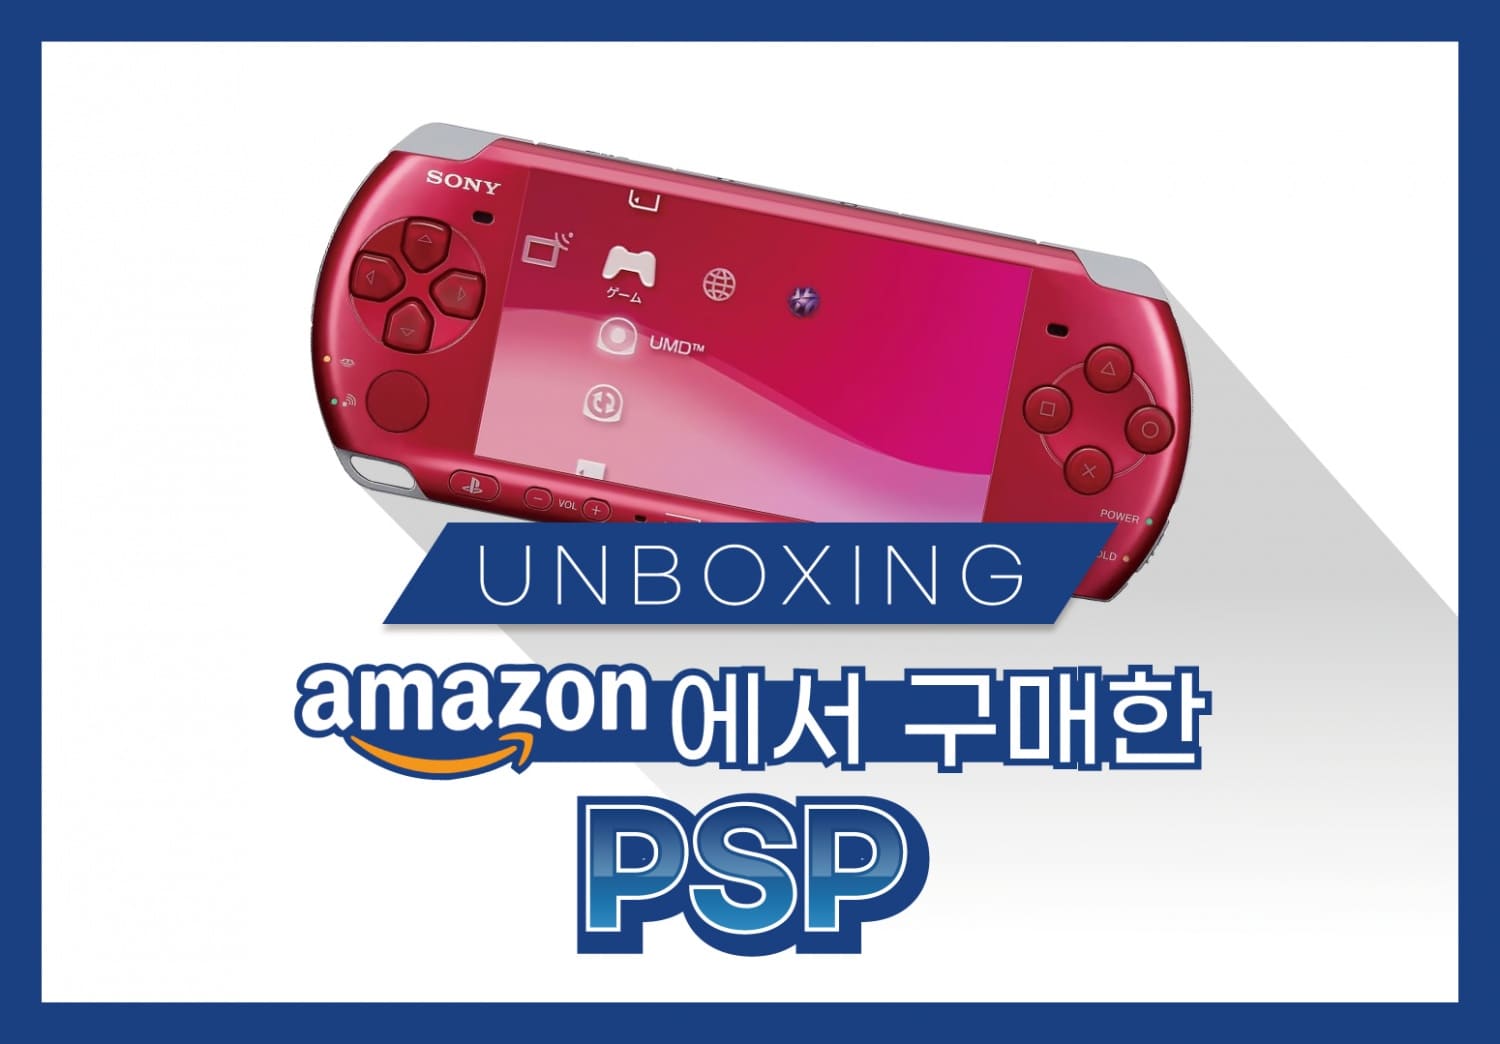 Amazon에서 구매한 PSP 썸네일